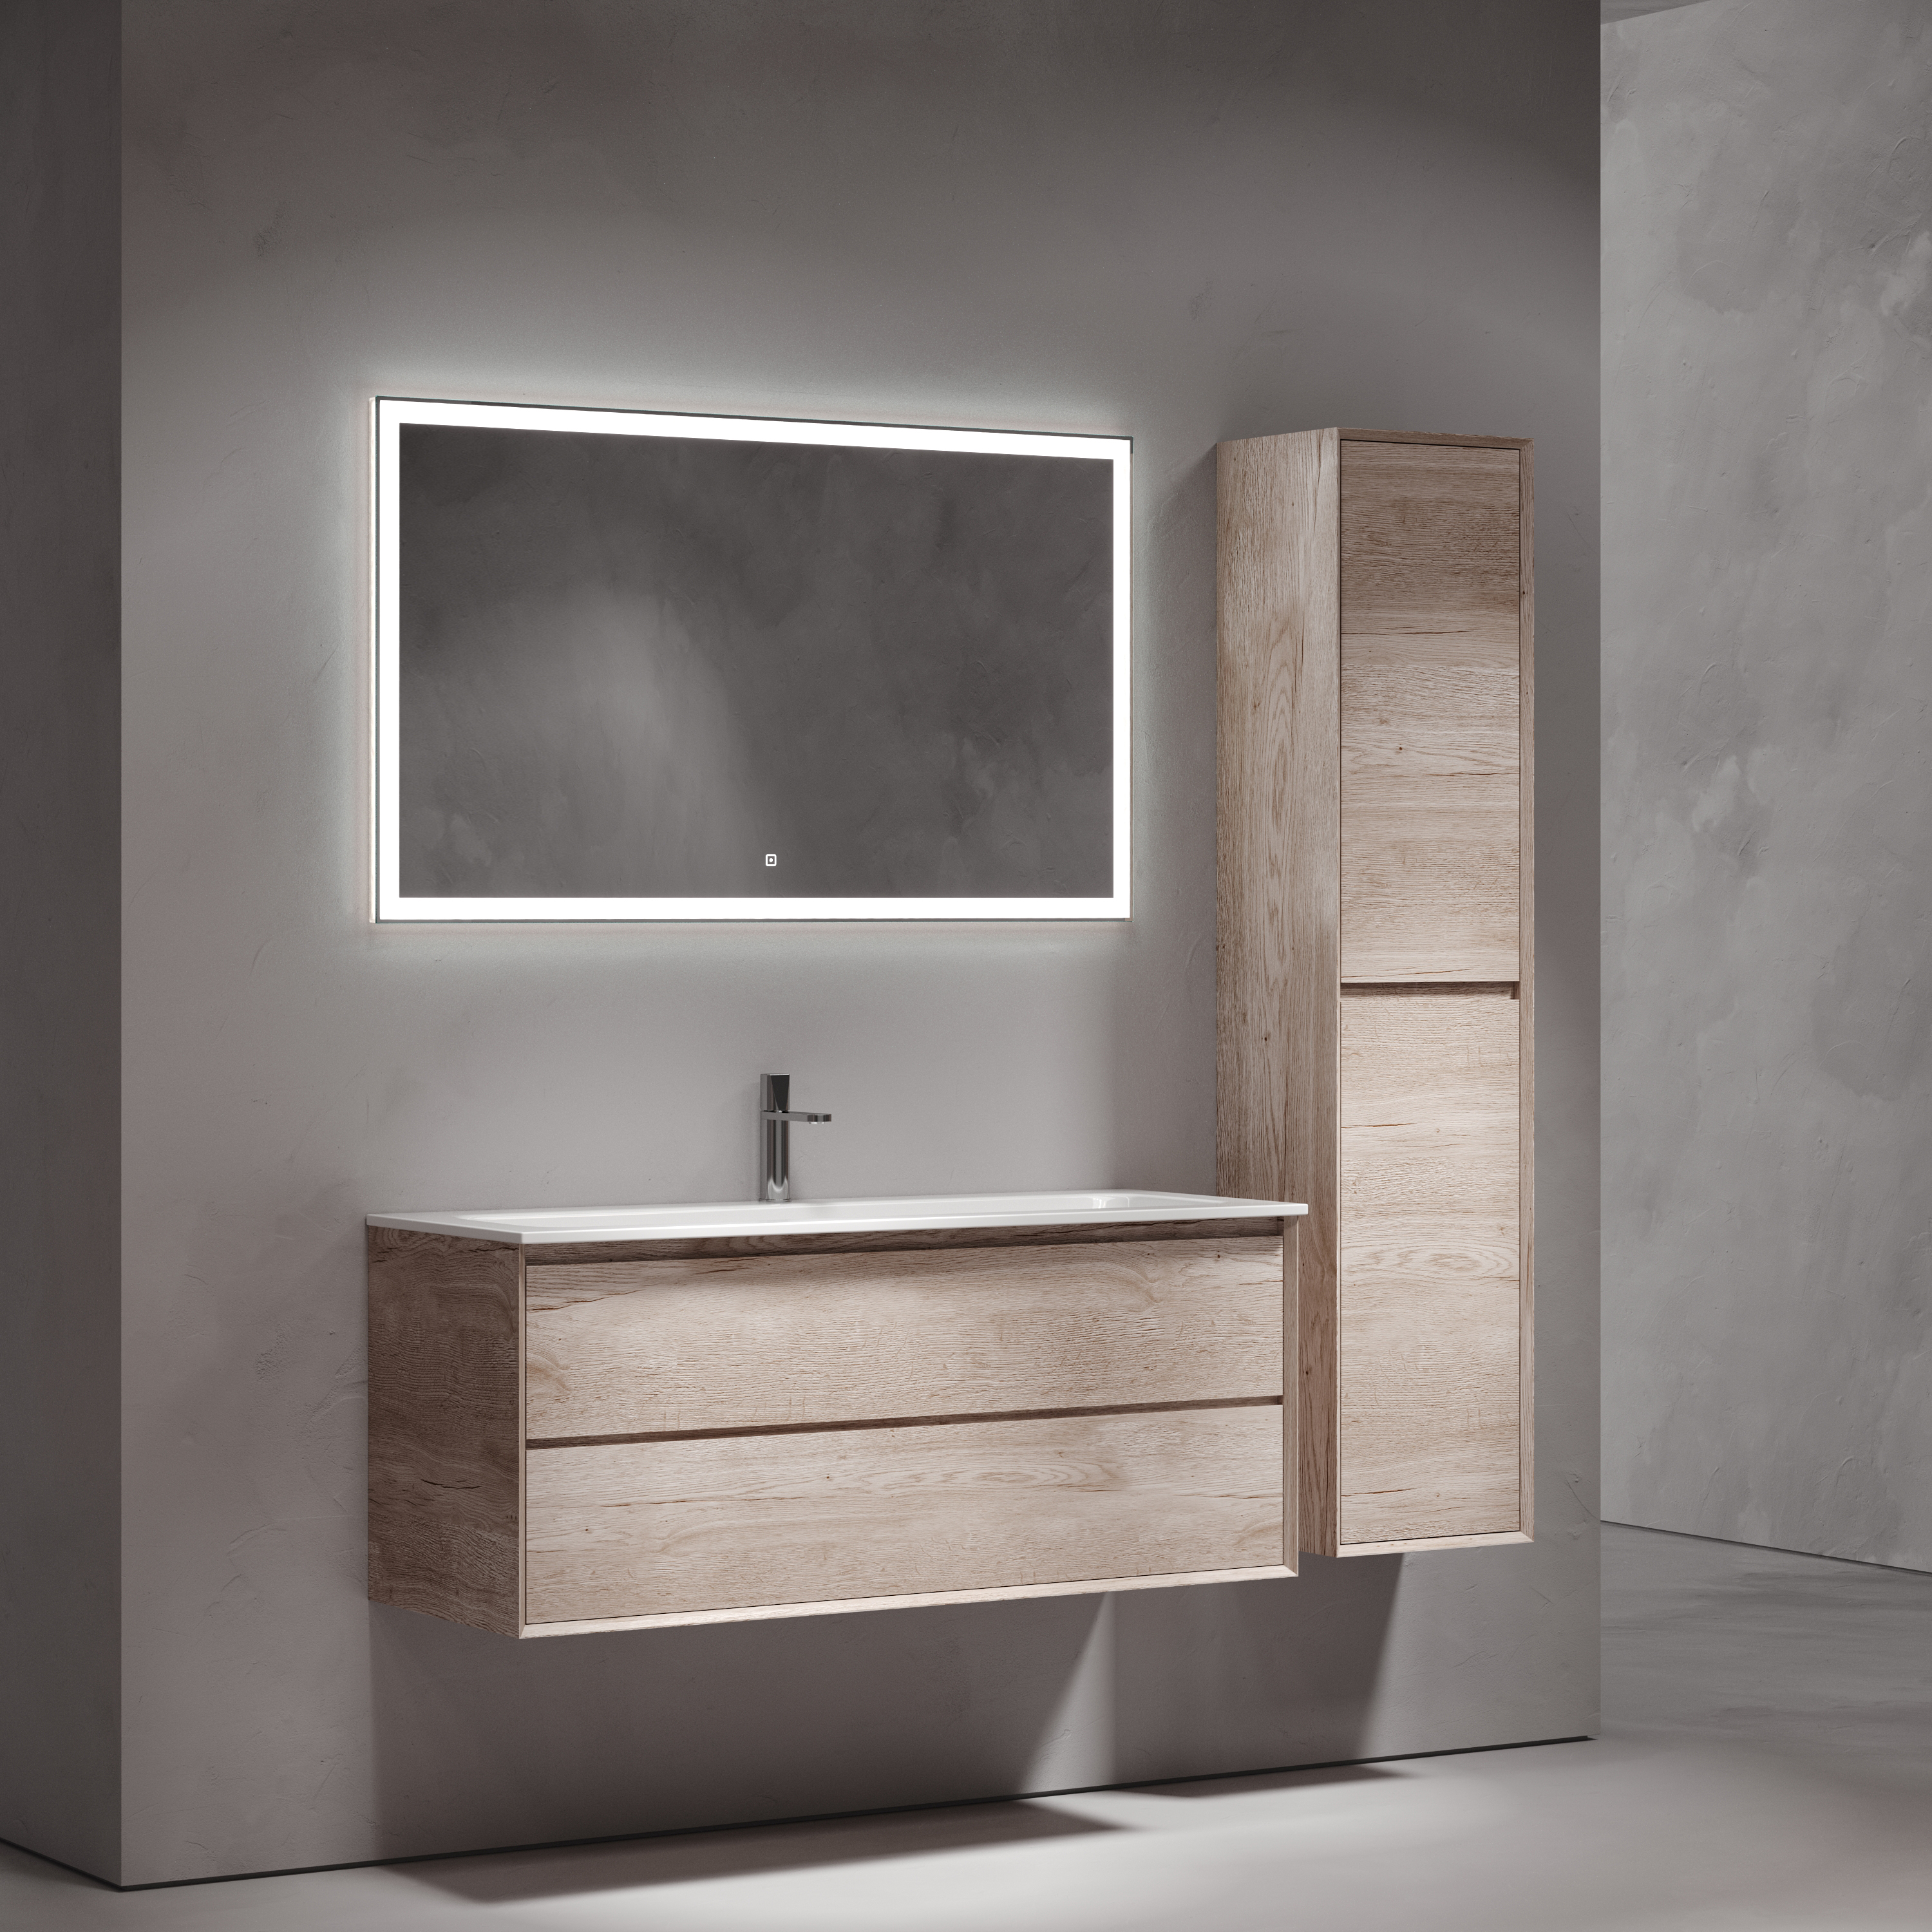 Мебель для ванной комнаты Sancos Marmi 2.0 120 см дуб галифакс натуральный, цвет коричневый MR2.0120EG - фото 2